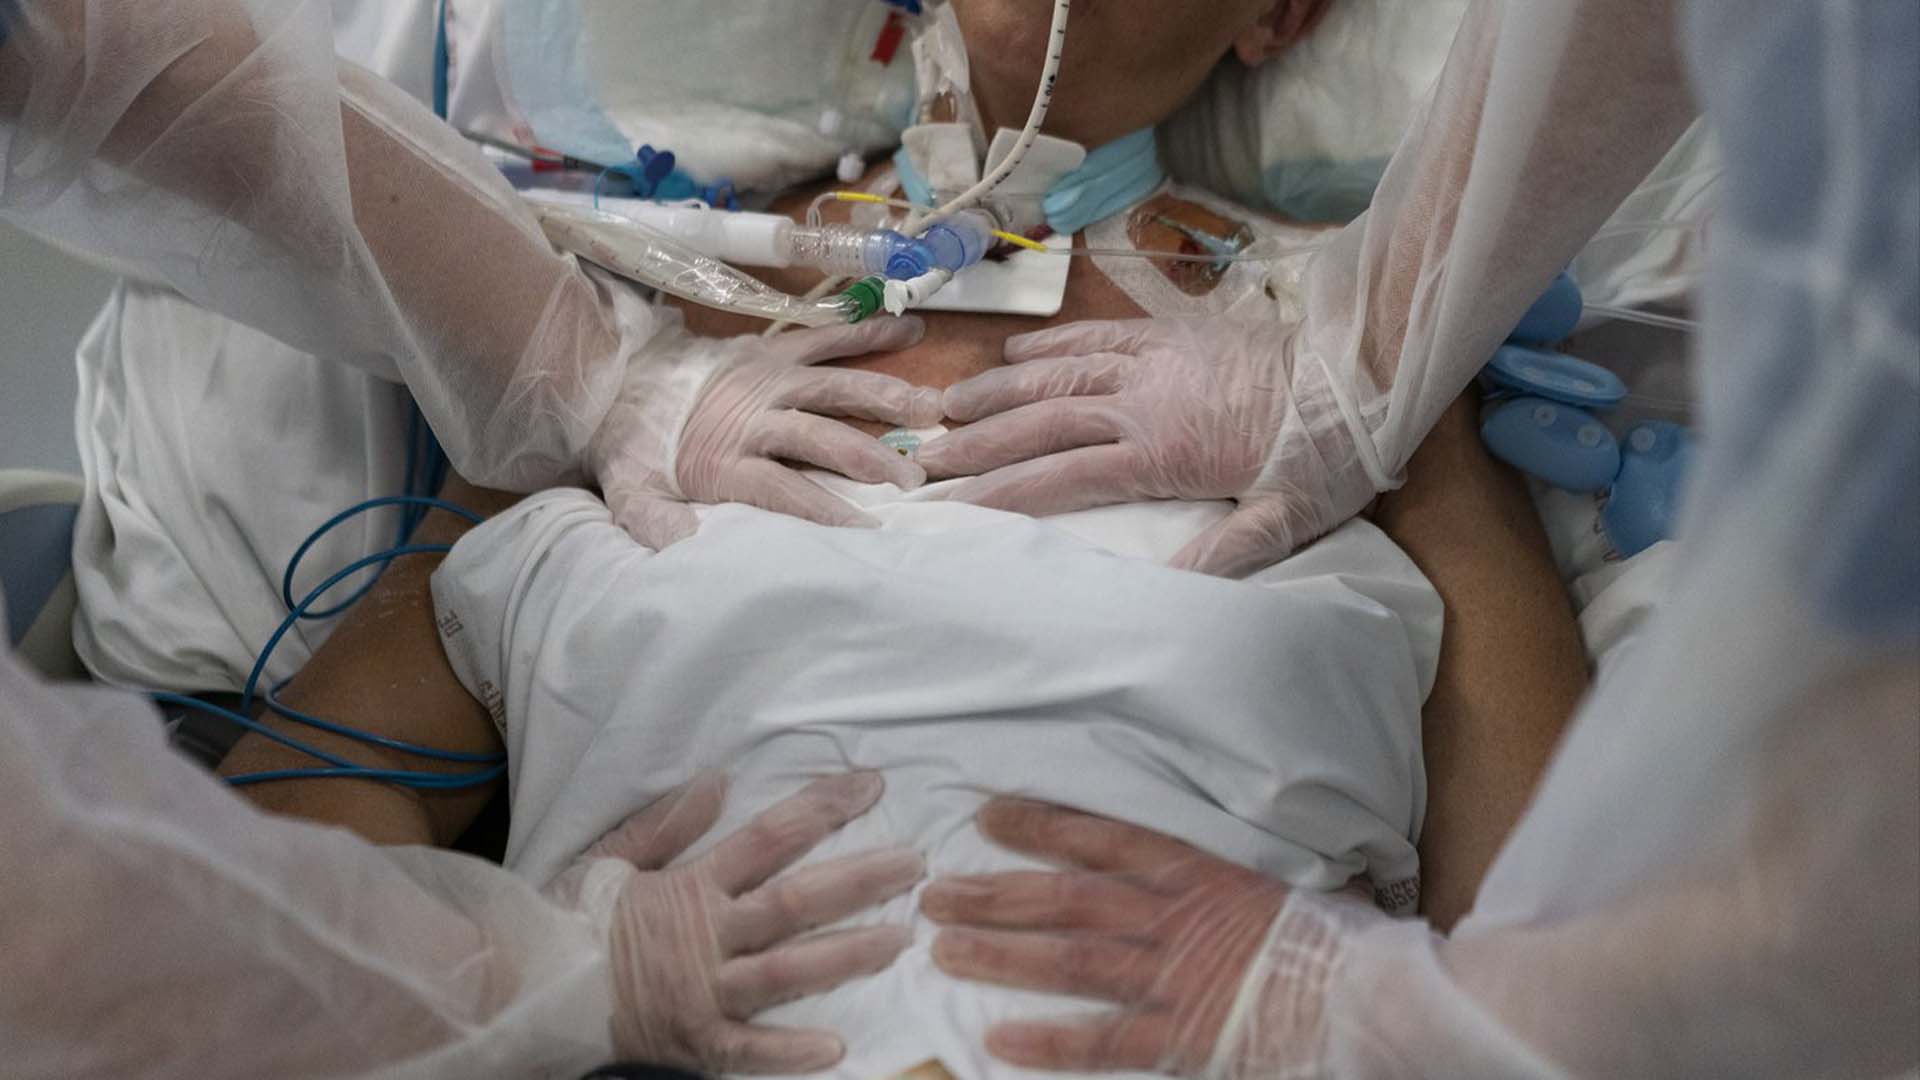 Des infirmières effectuent des exercices de respiration chronométrés sur un patient COVID-19 sous ventilateur dans l'unité de soins intensifs COVID-19 de l'hôpital de la Timone à Marseille, dans le sud de la France, le vendredi 31 décembre 2021. Le bilan mondial officiel des décès dus à COVID -19 est sur le point d'éclipser 6 millions - soulignant que la pandémie, maintenant dans sa troisième année, est loin d'être terminée.